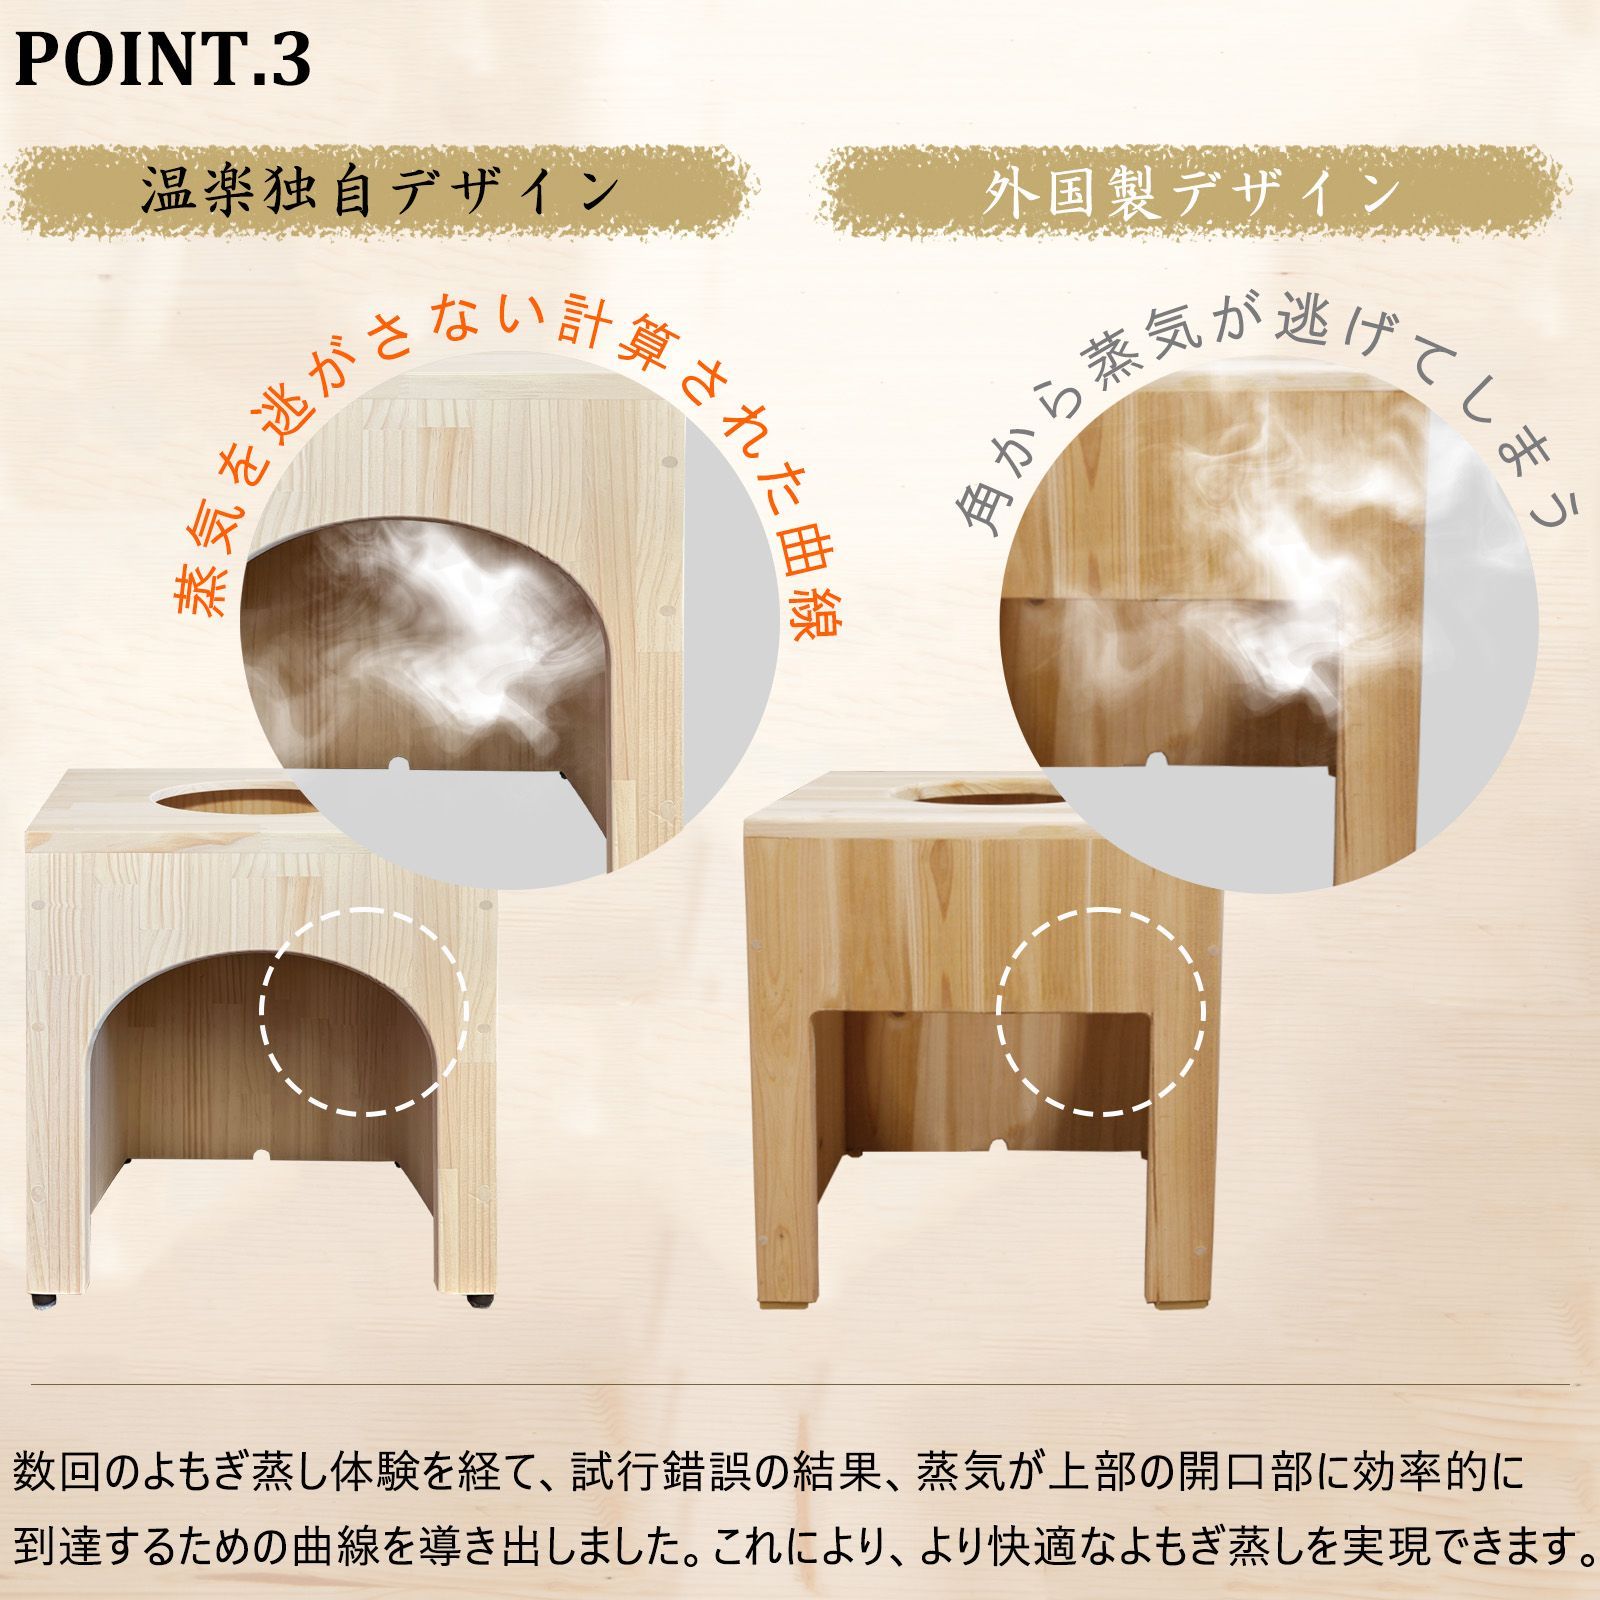 温楽 よもぎ蒸しセット 5品 日本の家具職人の手作り 椅子 韓国産 天然 ...